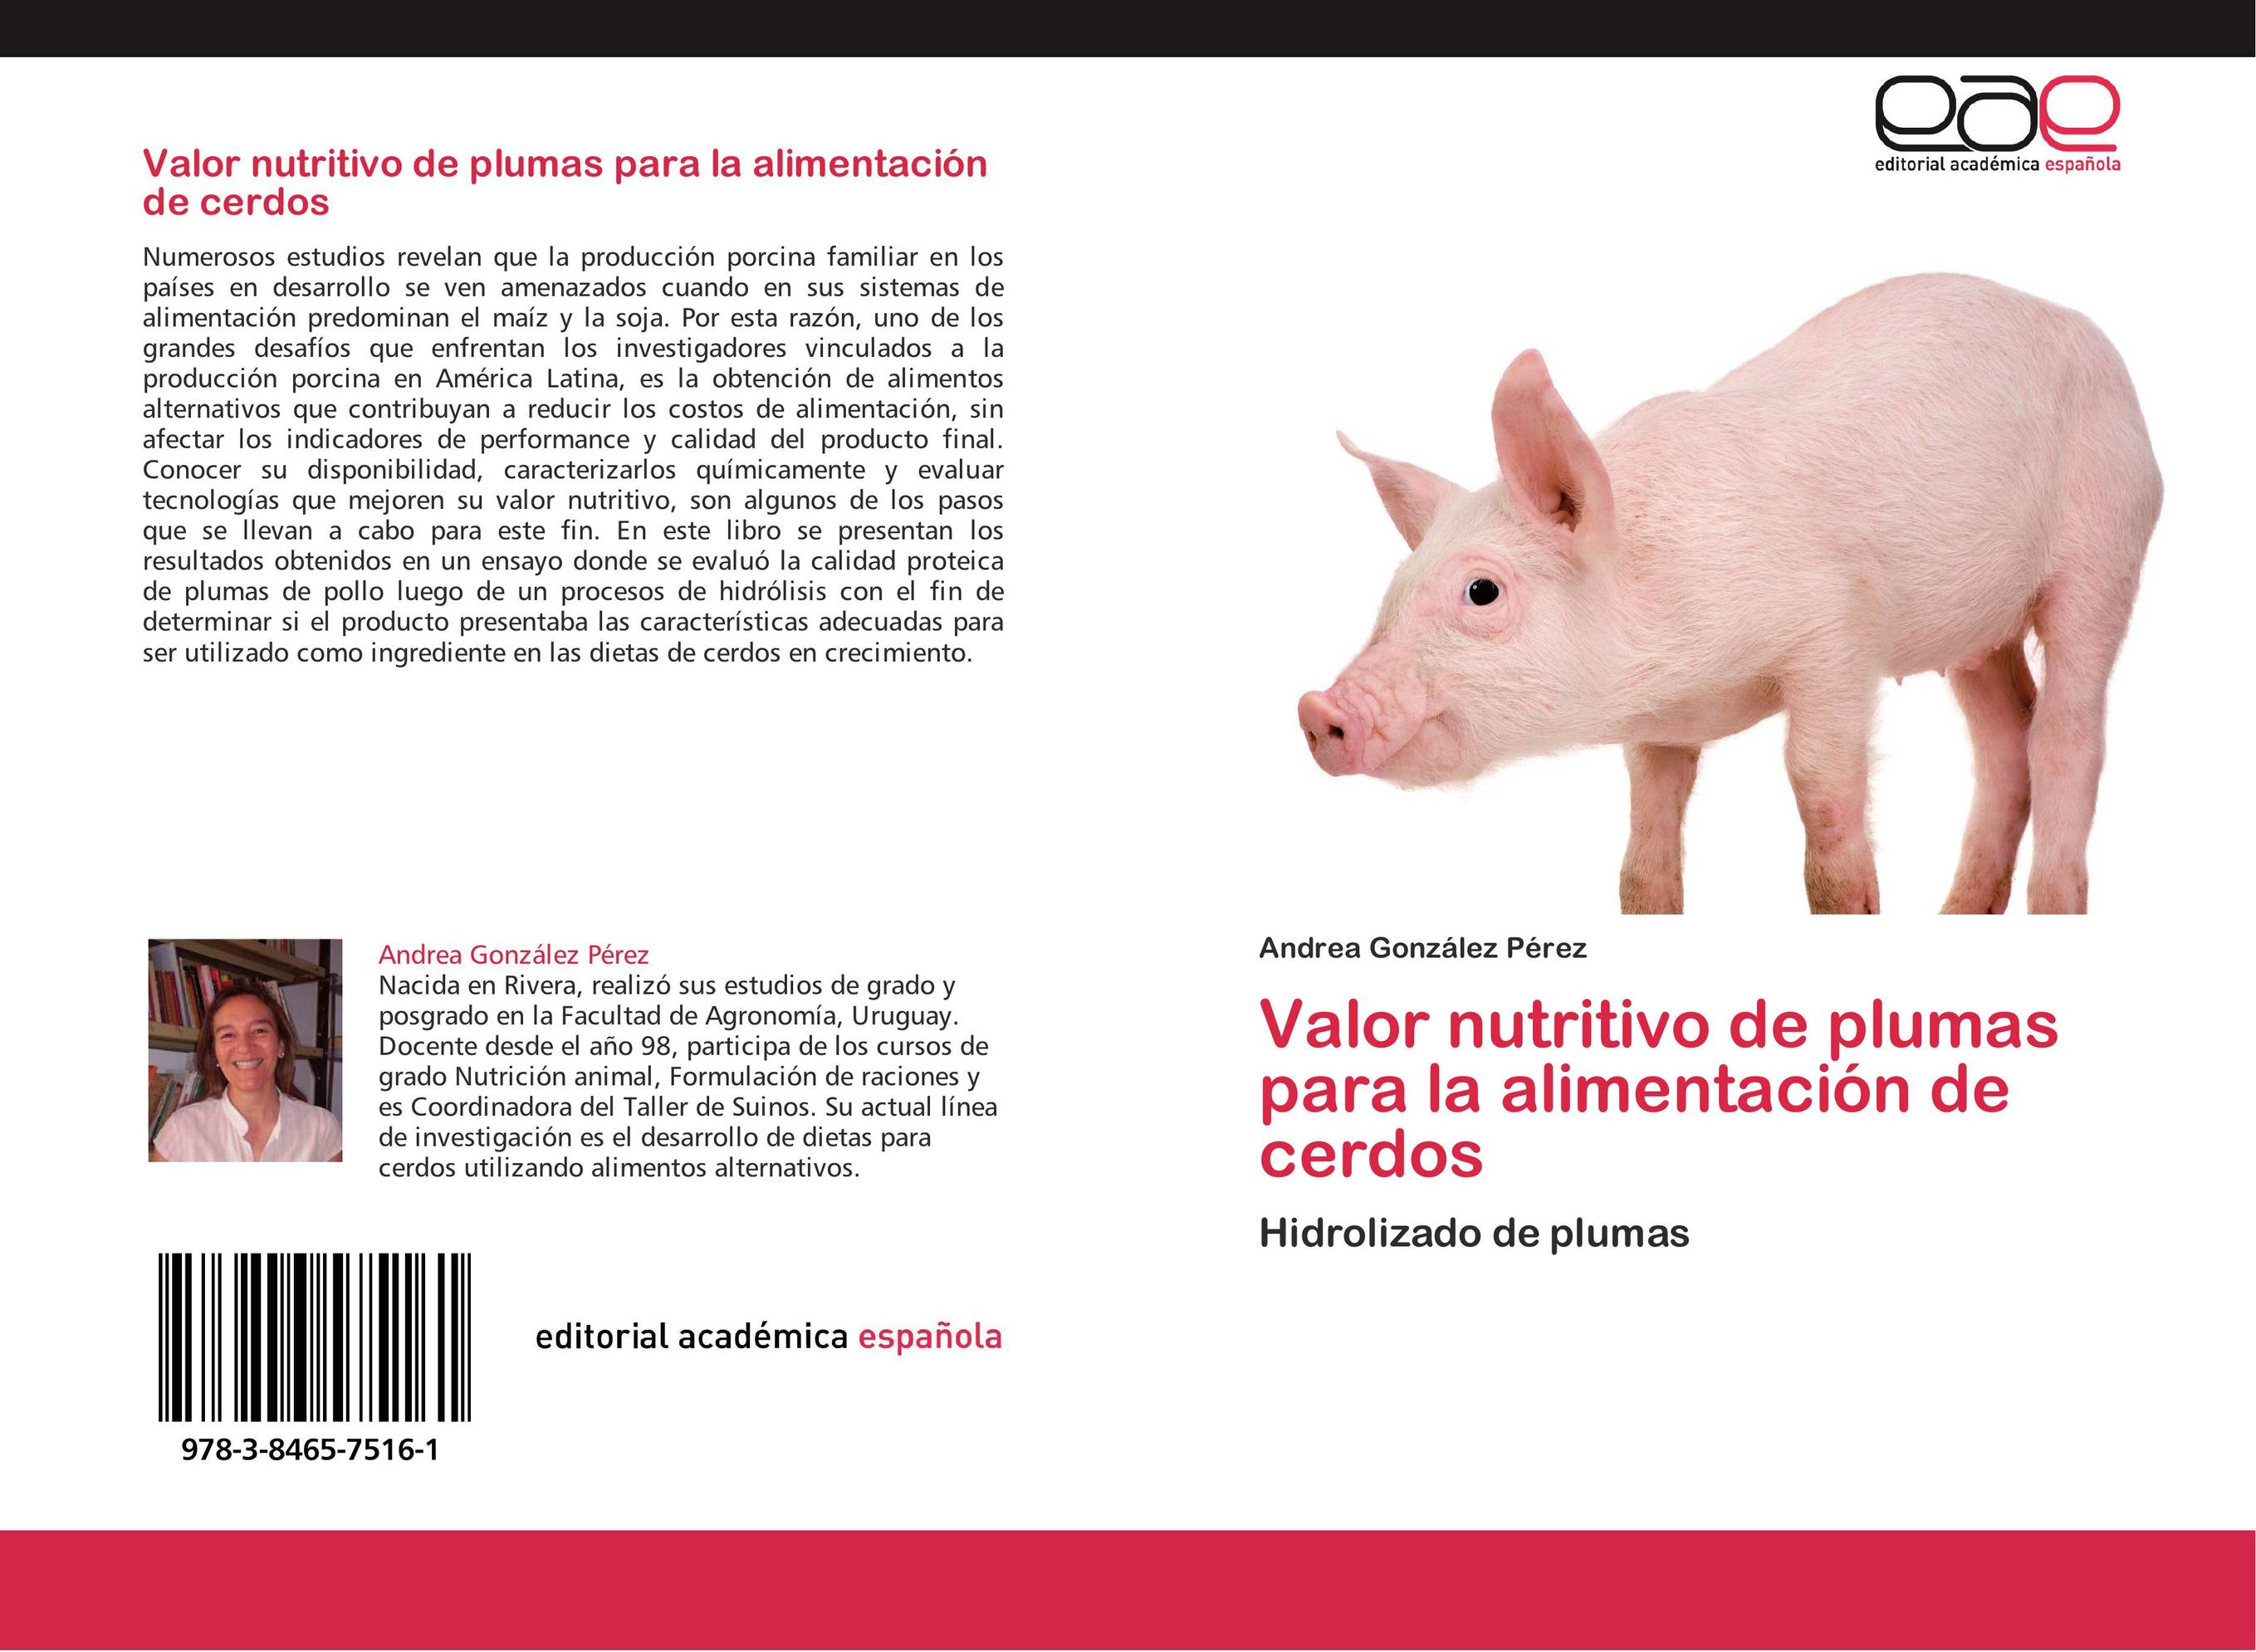 Valor nutritivo de plumas para la alimentación de cerdos